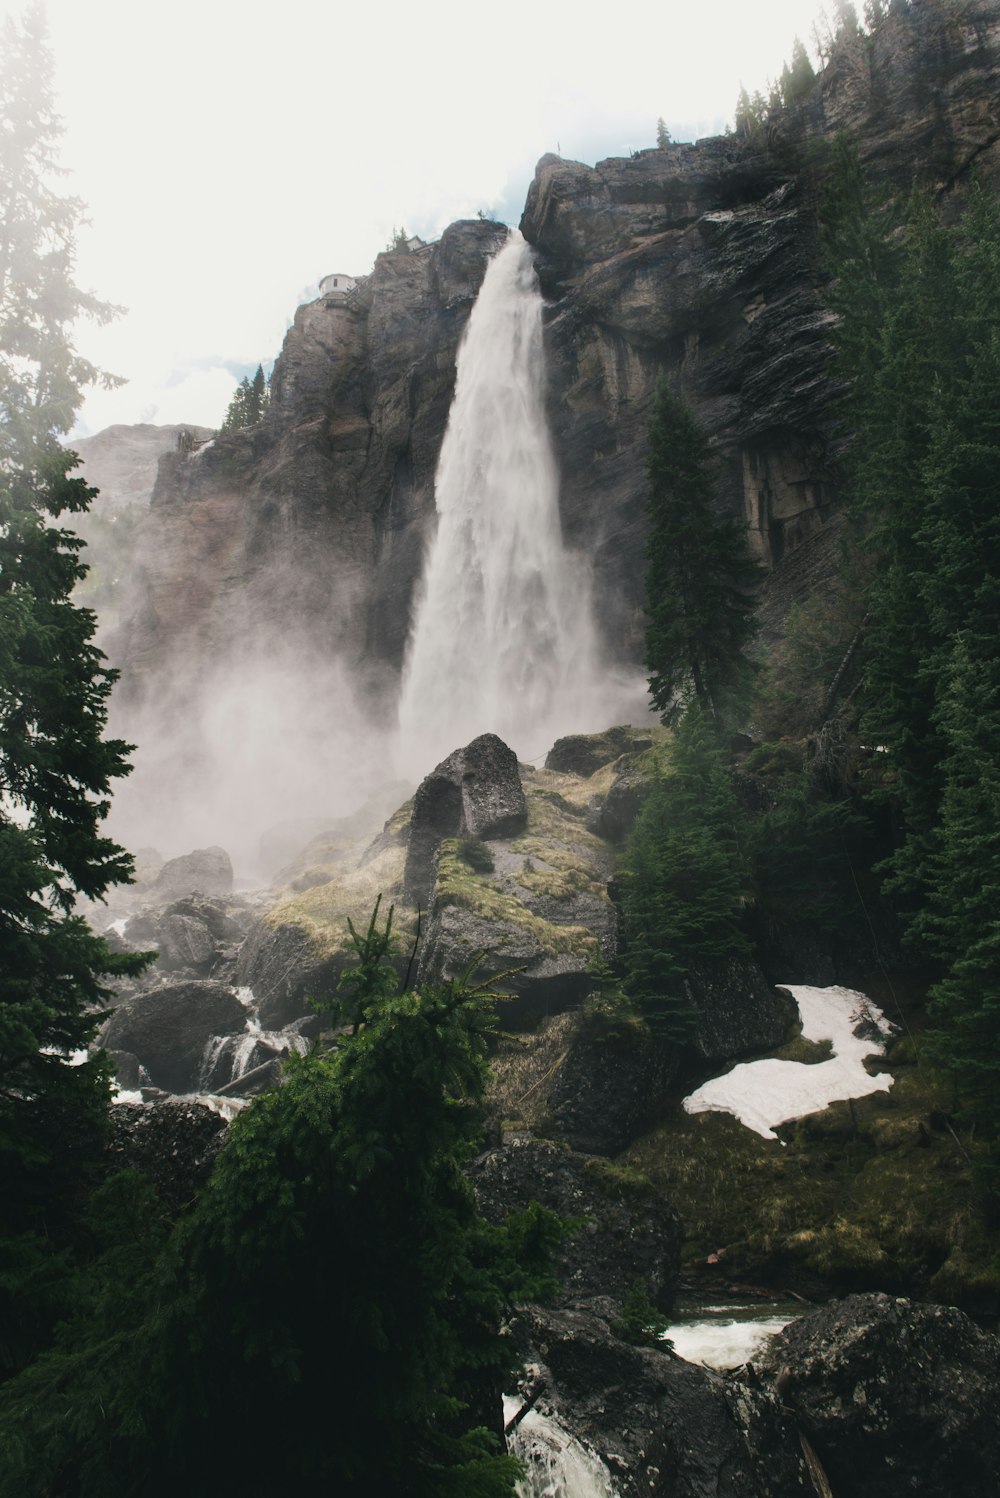 Fotografía de cascadas y pinos durante el día